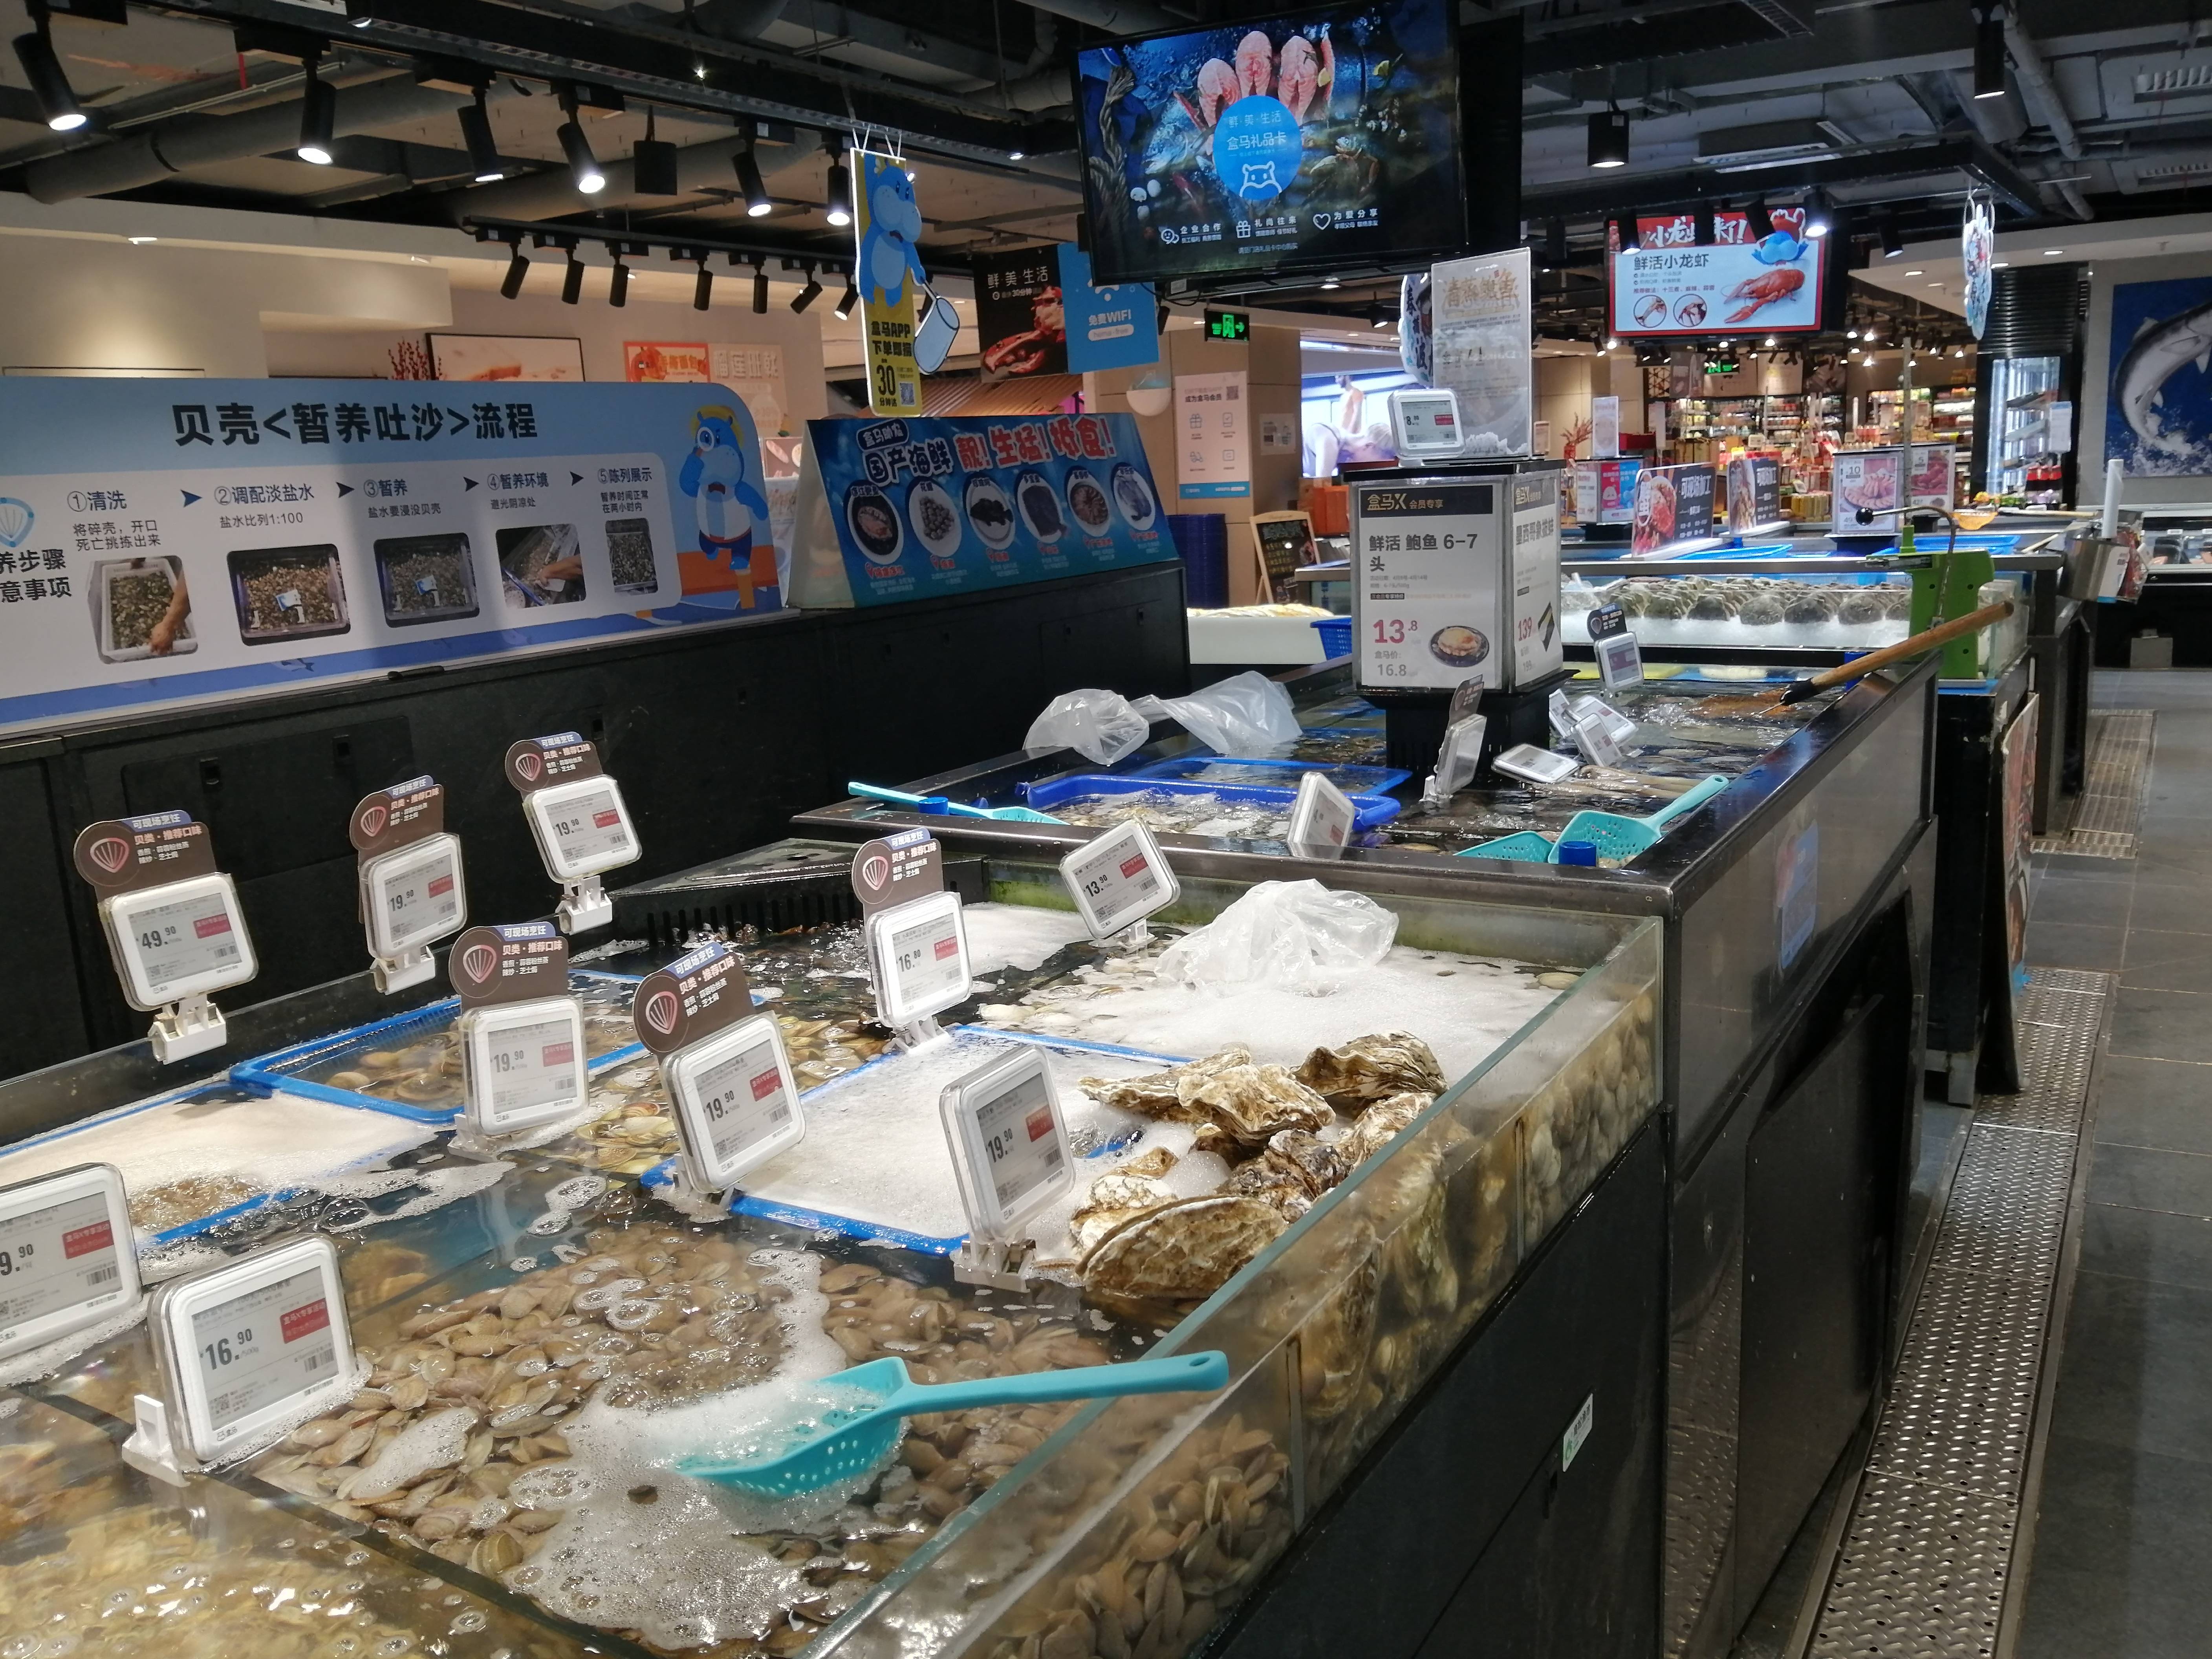 日产海鲜你有没在吃!广州5大超市走访:水产品多产自国内